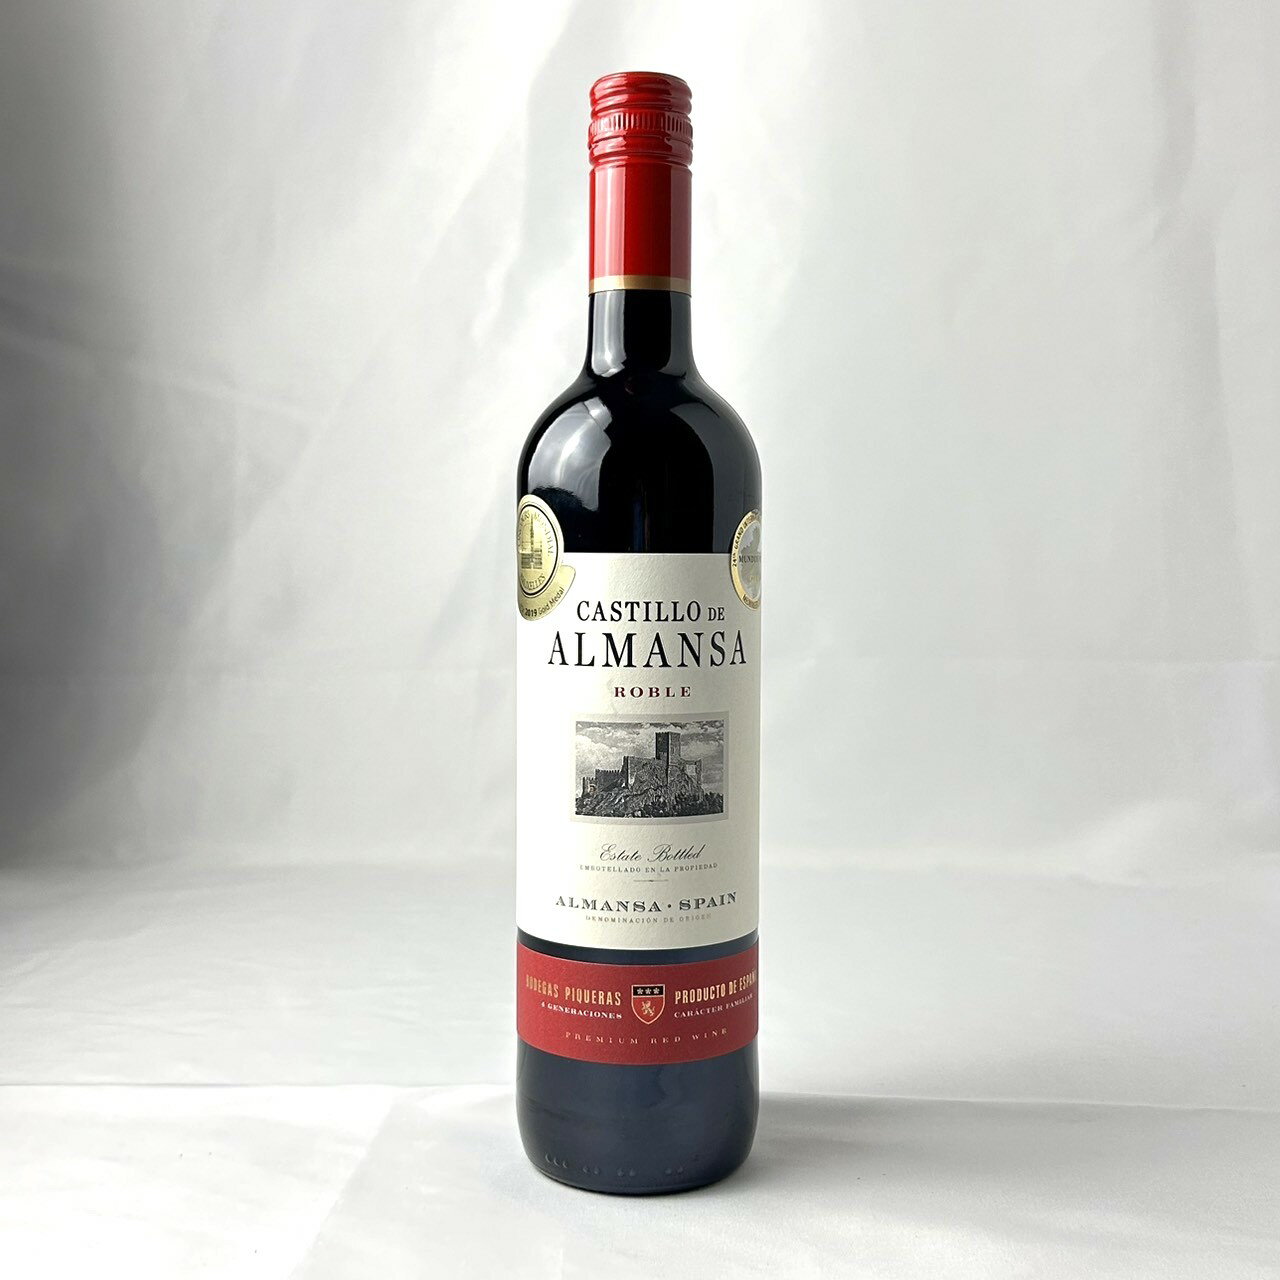 カスティージョ デ アルマンサ ロブレ オーガニック 750ml Castillo de Almansa Roble Organic 滑らかで深い味わい,フィニッシュのタンニンも舌にこびりつくこともなくシルキー。 スペインで最も有名で最も高額のワインしか造ってこなかったスペインの最高級ワイン醸造家ファンパブロが造る信じられない程お得で価値のあるコスパワイン。　　　　　 よく合う料理：肉料理全般、濃い味のアラビアータやクワトロ、フォルマッジ等のブルーチーズ料理、オールドタイプのチーズ。 産地：スペイン／アルマンサ 格付け：D.O.アルマンサ 葡萄：ガルナッチャティントレラ50%、モナストレル50% アルコール度数：14.5% 味わい：赤／ミディアムボディ 容量：750ml